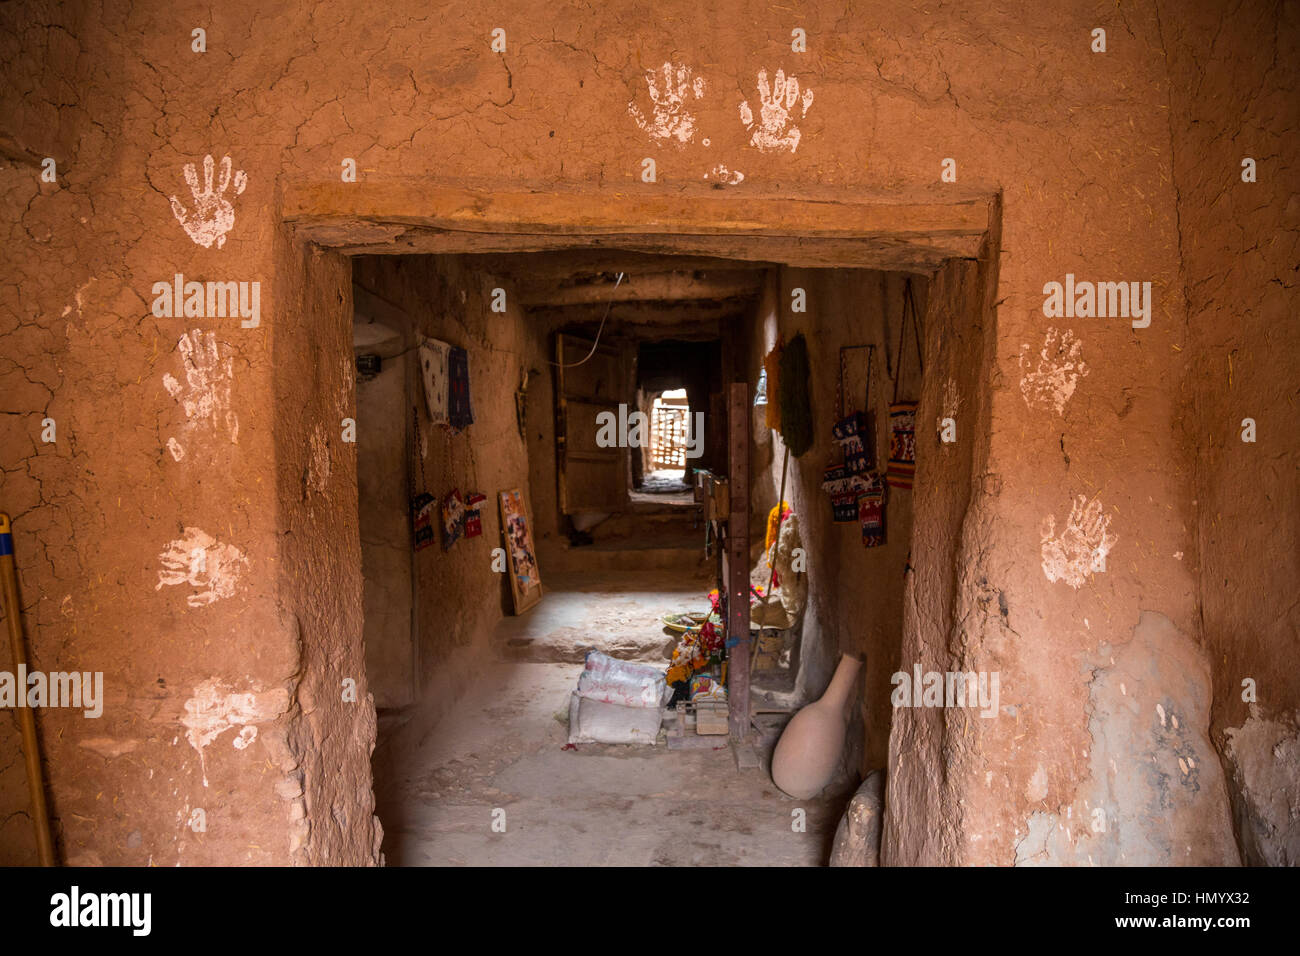 Le Maroc. Mains de Fatima autour de l'embrasure de protéger la maison du mal. Ksar Ait Benhaddou, un site du patrimoine mondial. Banque D'Images